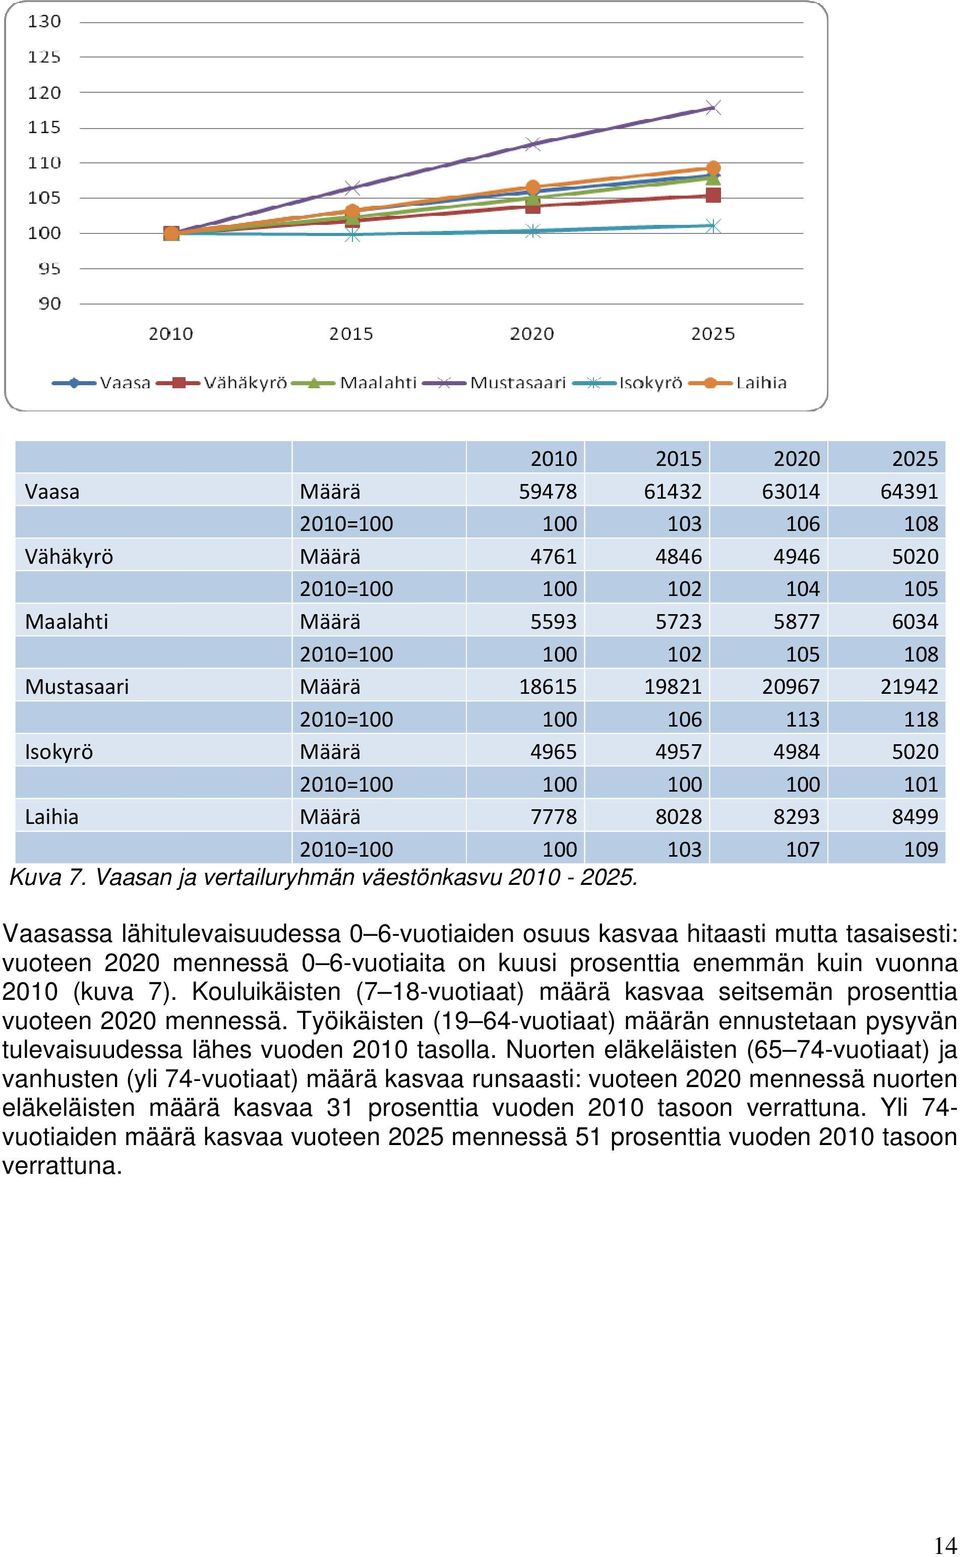 Vaasan ja vertailuryhmän väestönkasvu 2010-2025.